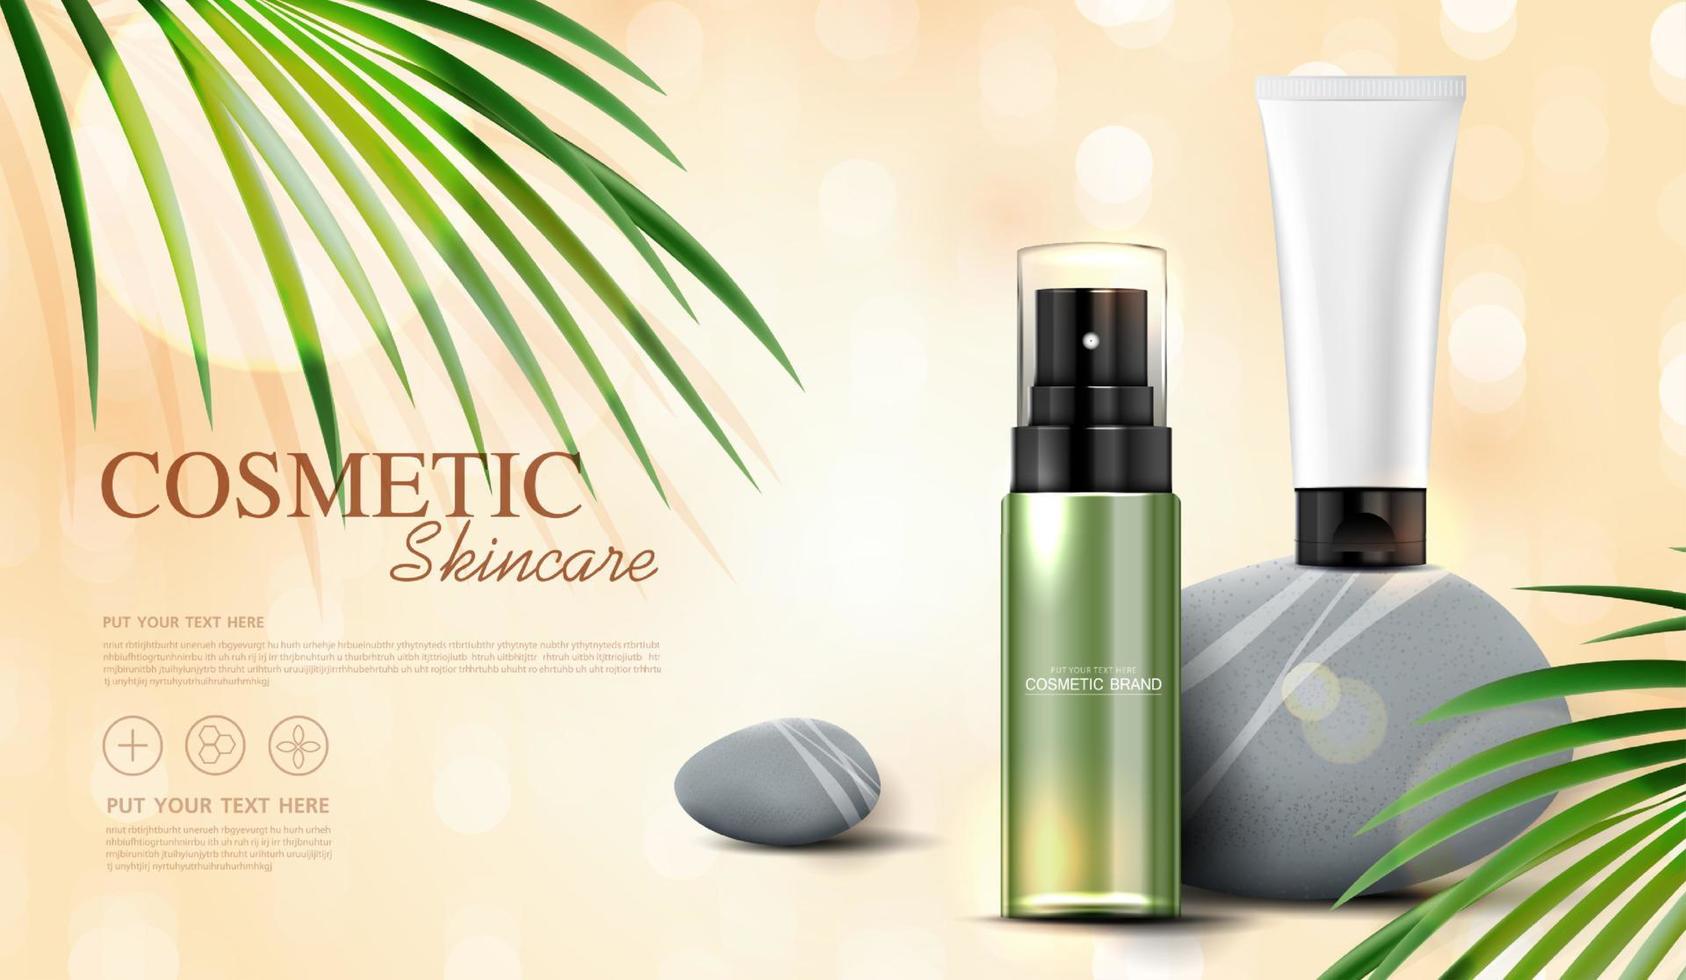 uppfriskande grönt te kosmetika eller hudvårdsprodukter annonser med flaska, bannerannons för skönhetsprodukter, sten och blad på bakgrunden glittrande ljuseffekt. vektor design